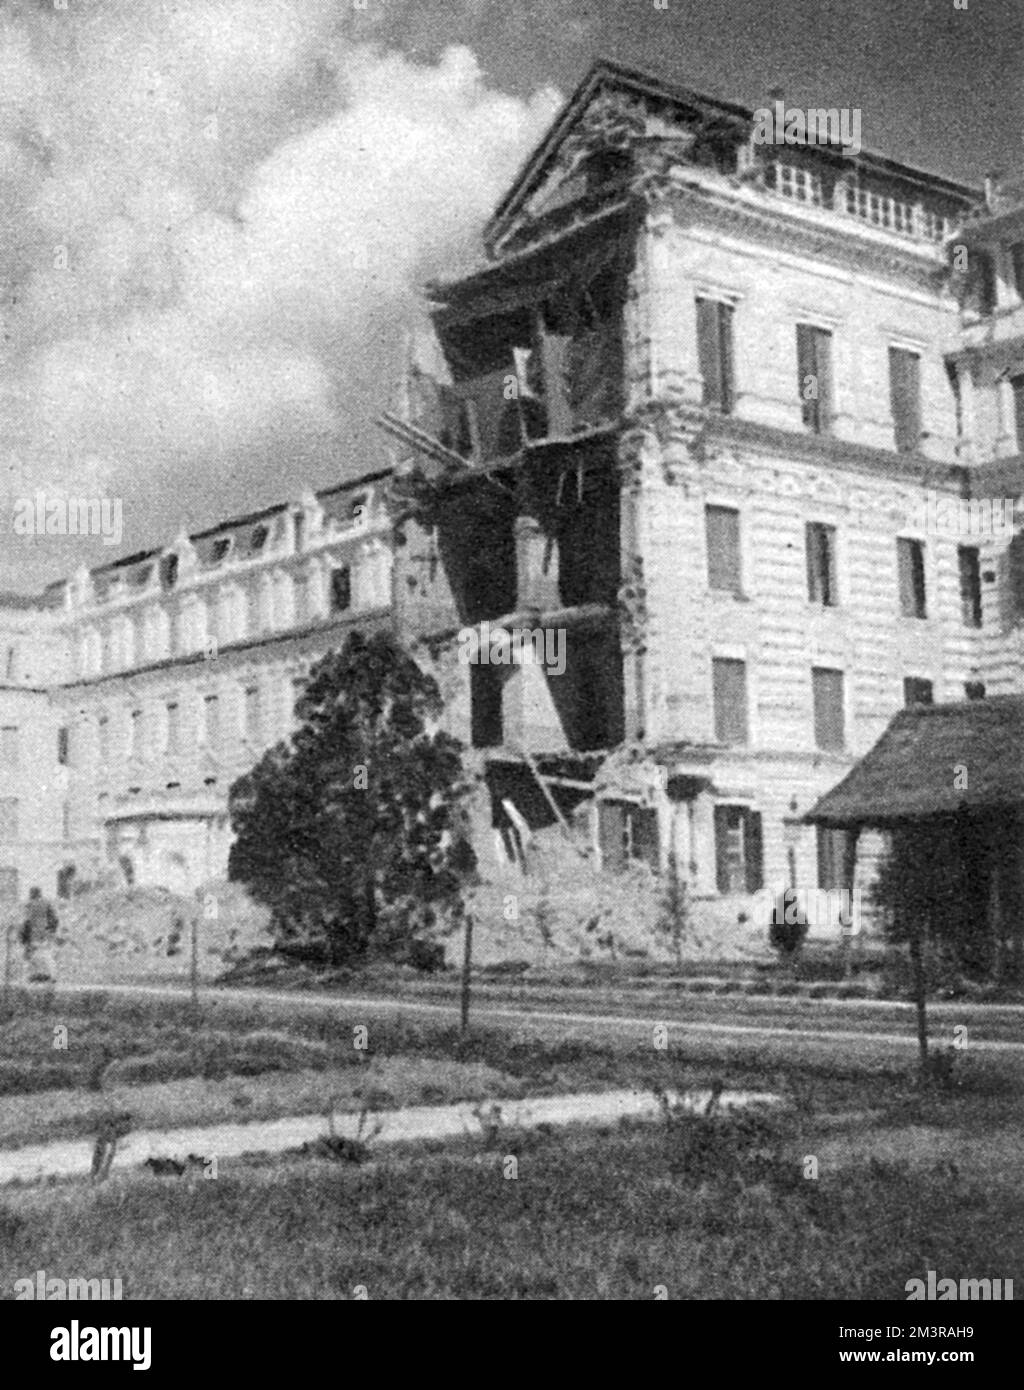 Das Singha Durbar, oder Regierungsgebäude, das als "glücklicherweise in dem Maße, wie einige Teile davon stehen bleiben" beschrieben wurde: Stark gebaut und nicht irreparabel beschädigt. Datum: Januar 1934 Stockfoto